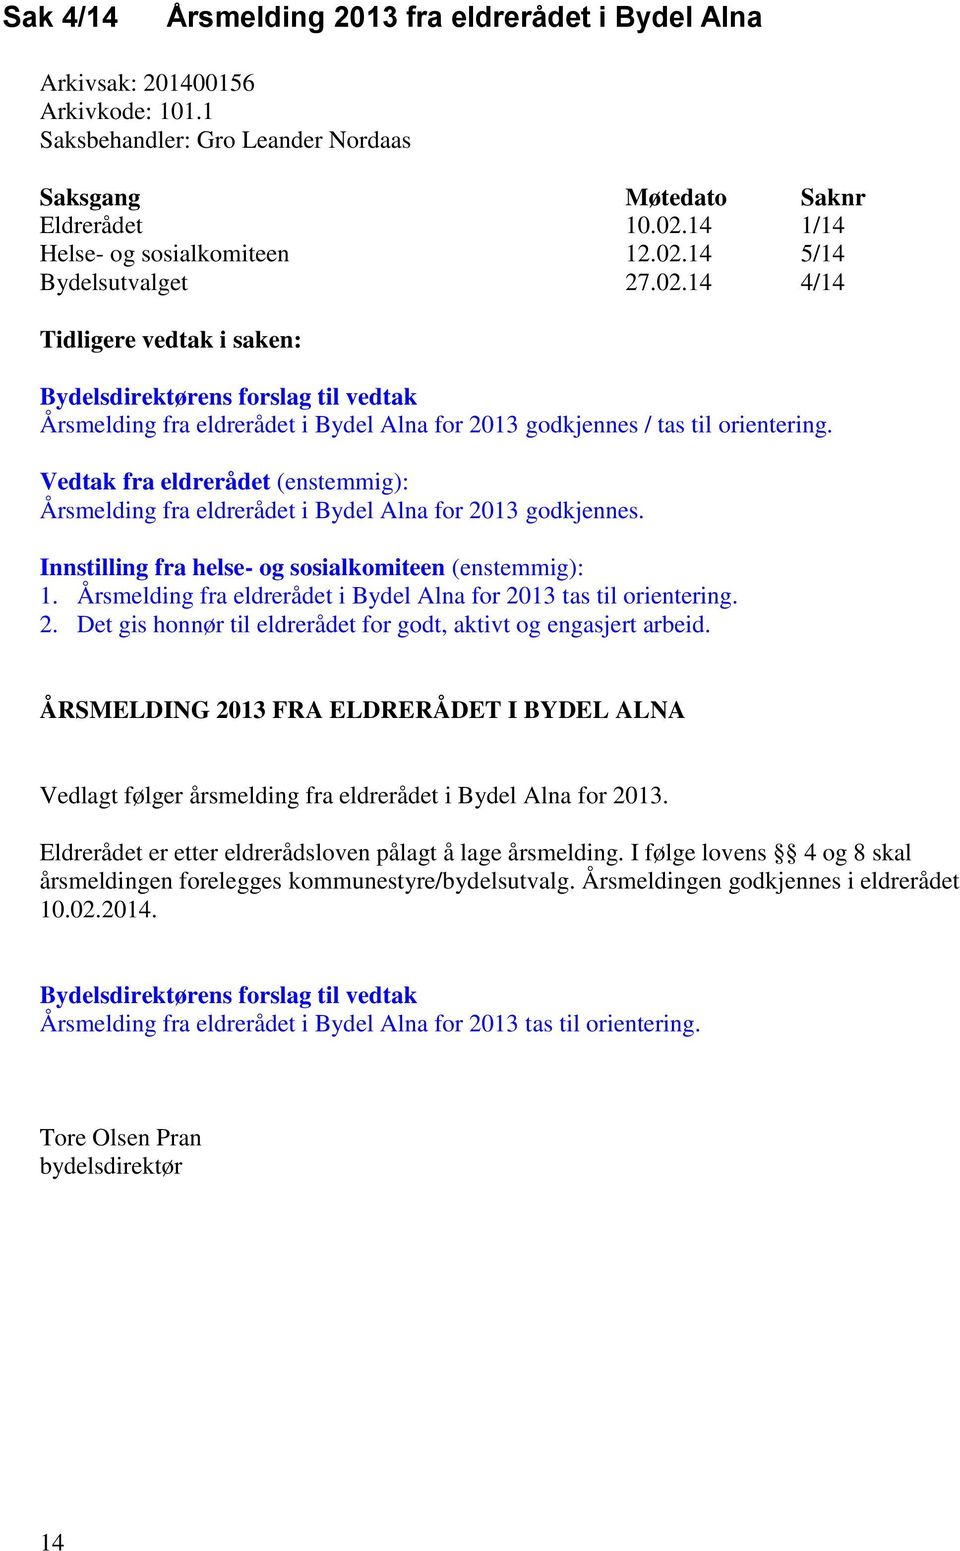 Vedtak fra eldrerådet (enstemmig): Årsmelding fra eldrerådet i Bydel Alna for 2013 godkjennes. Innstilling fra helse- og sosialkomiteen (enstemmig): 1.